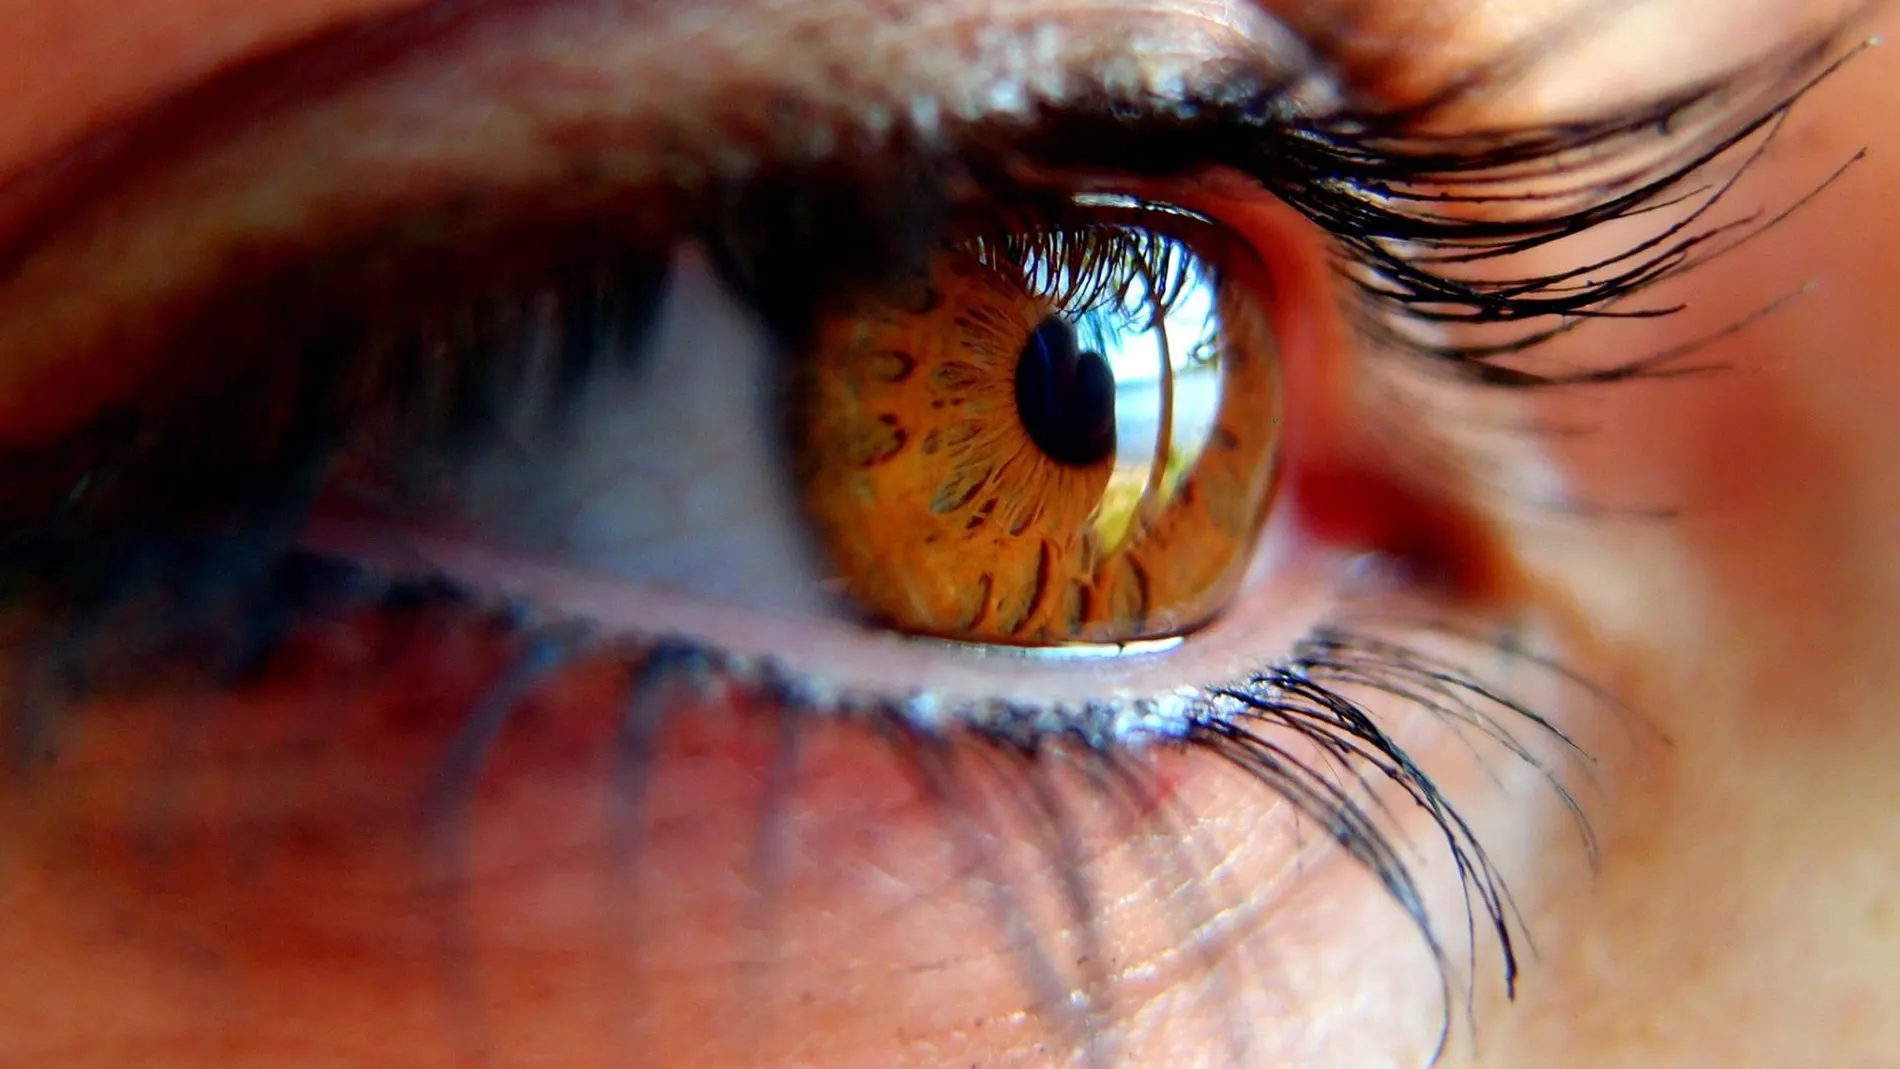 Los pacientes con diabetes que van al oftalmólogo presentan ya algún grado de pérdida de visión